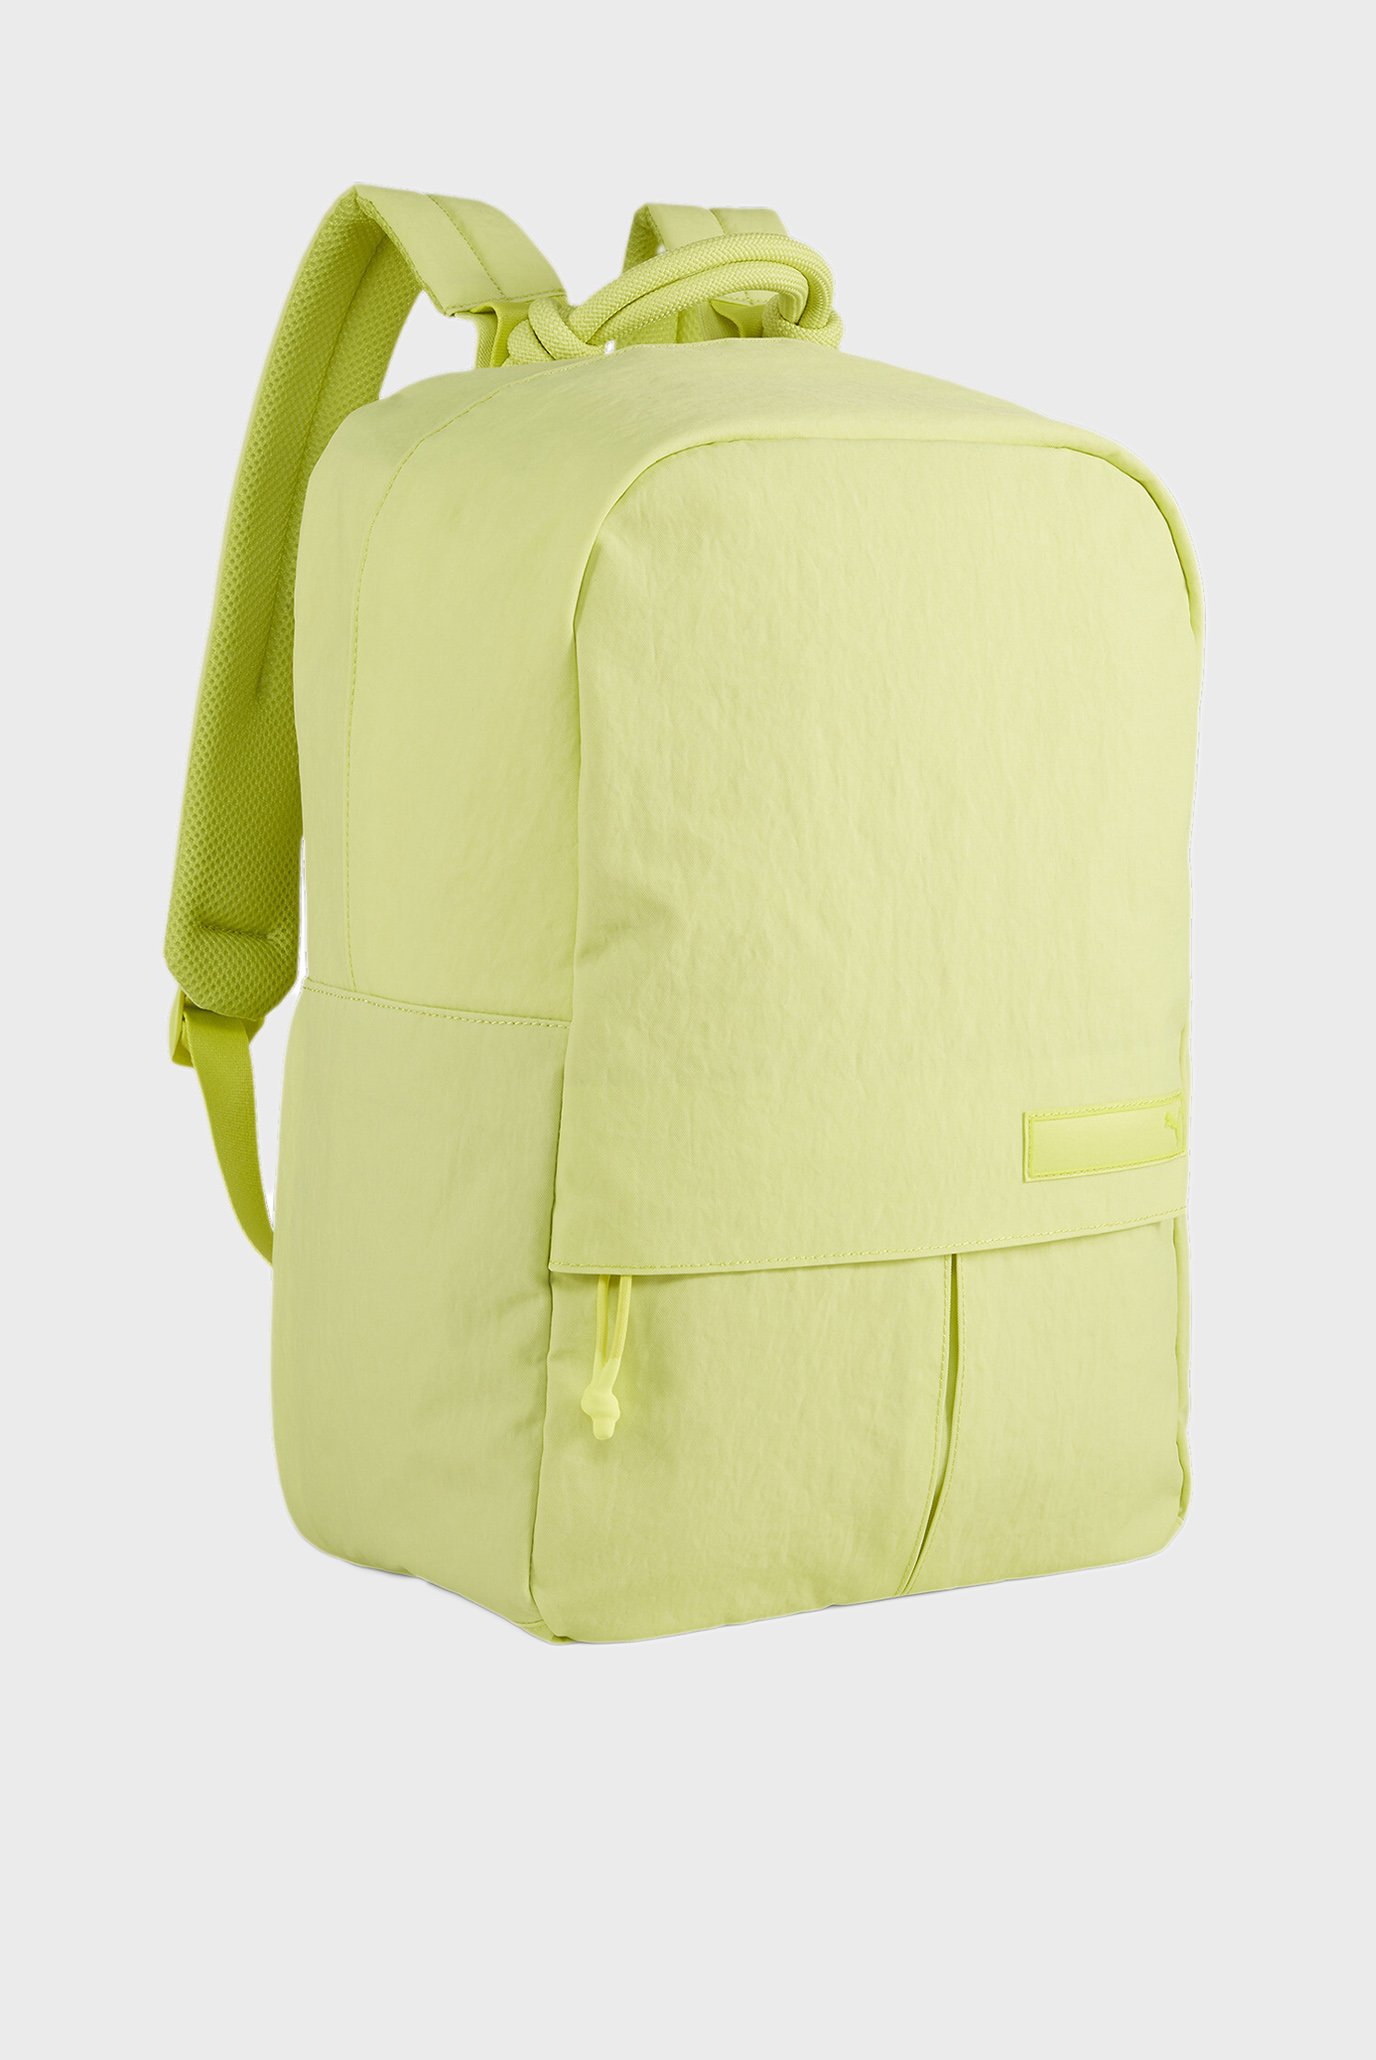 Салатовый рюкзак PUMA.BL Backpack 1